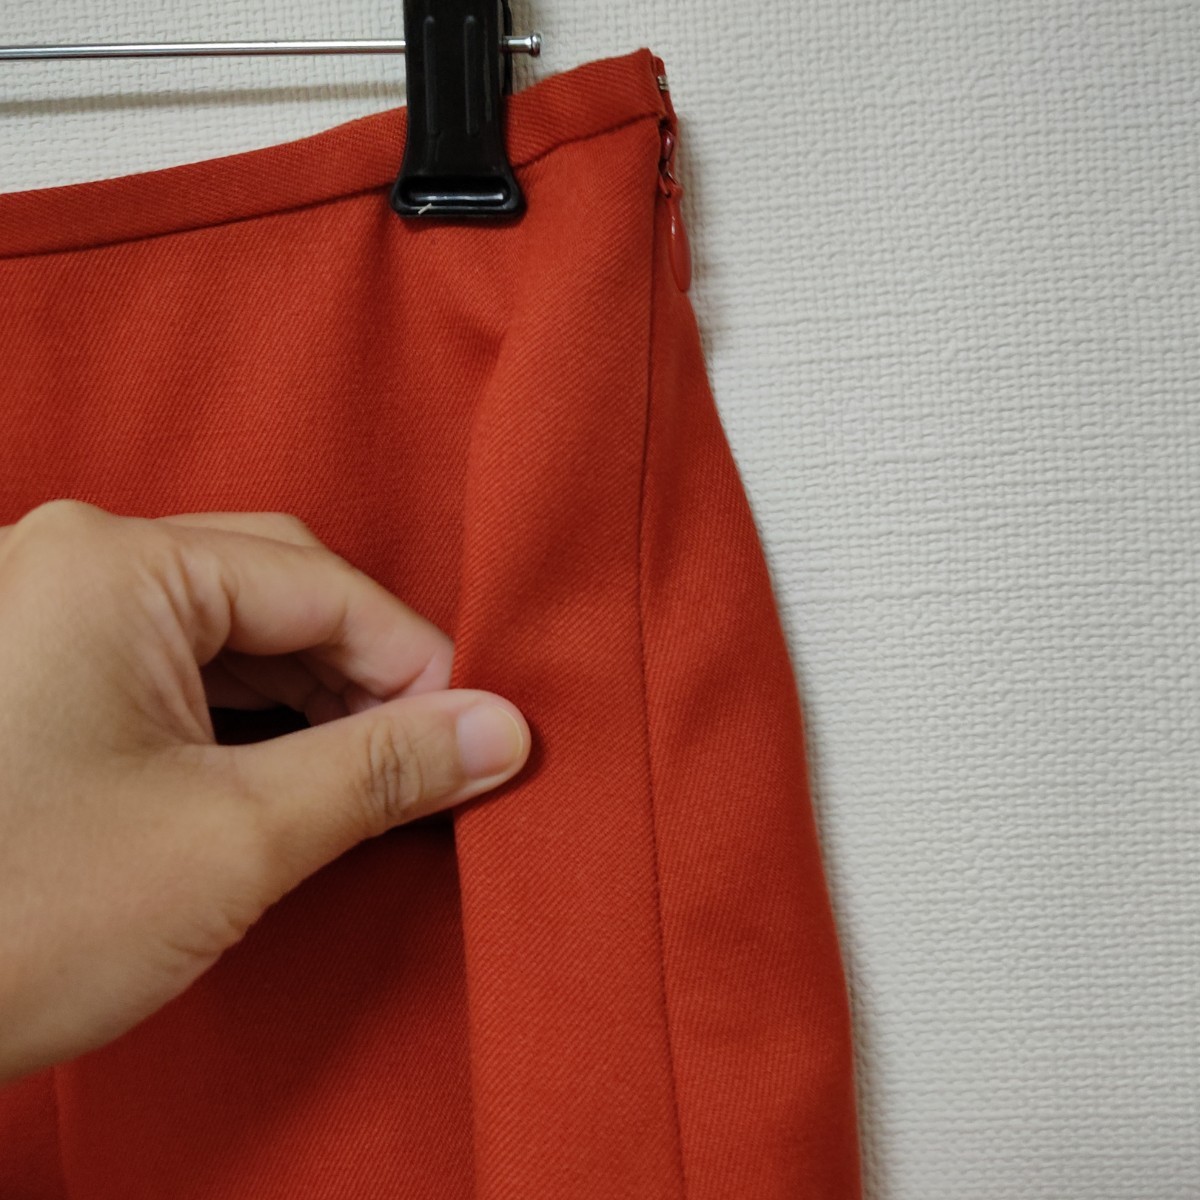 新品同様 日本製 イエナ スローブ IENA SLOBE リボンモチーフスカート ウール素材 レッド 38 台形スカート